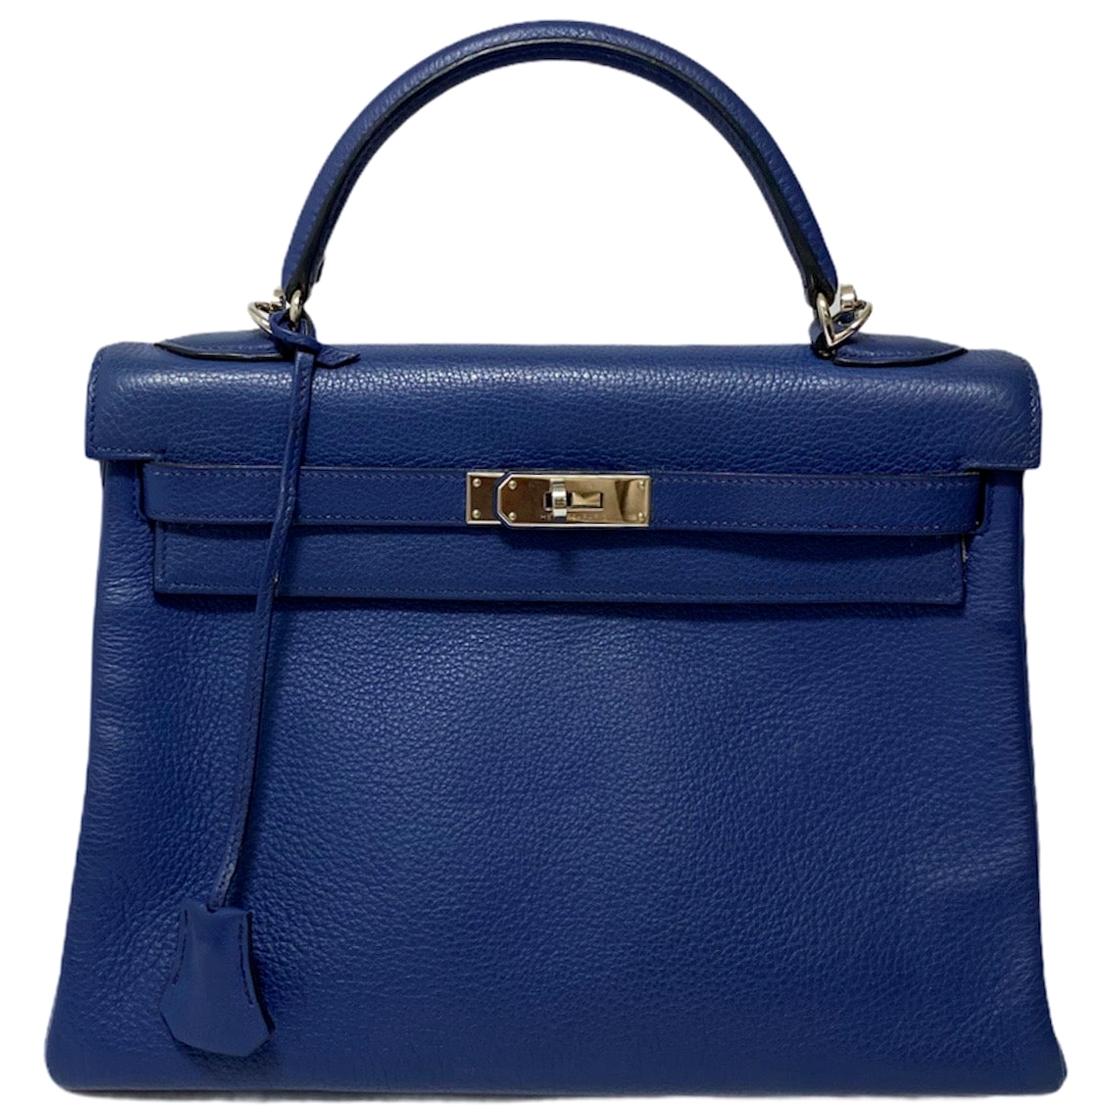 2006 Hermes Blue Leather kelly 32 Bag